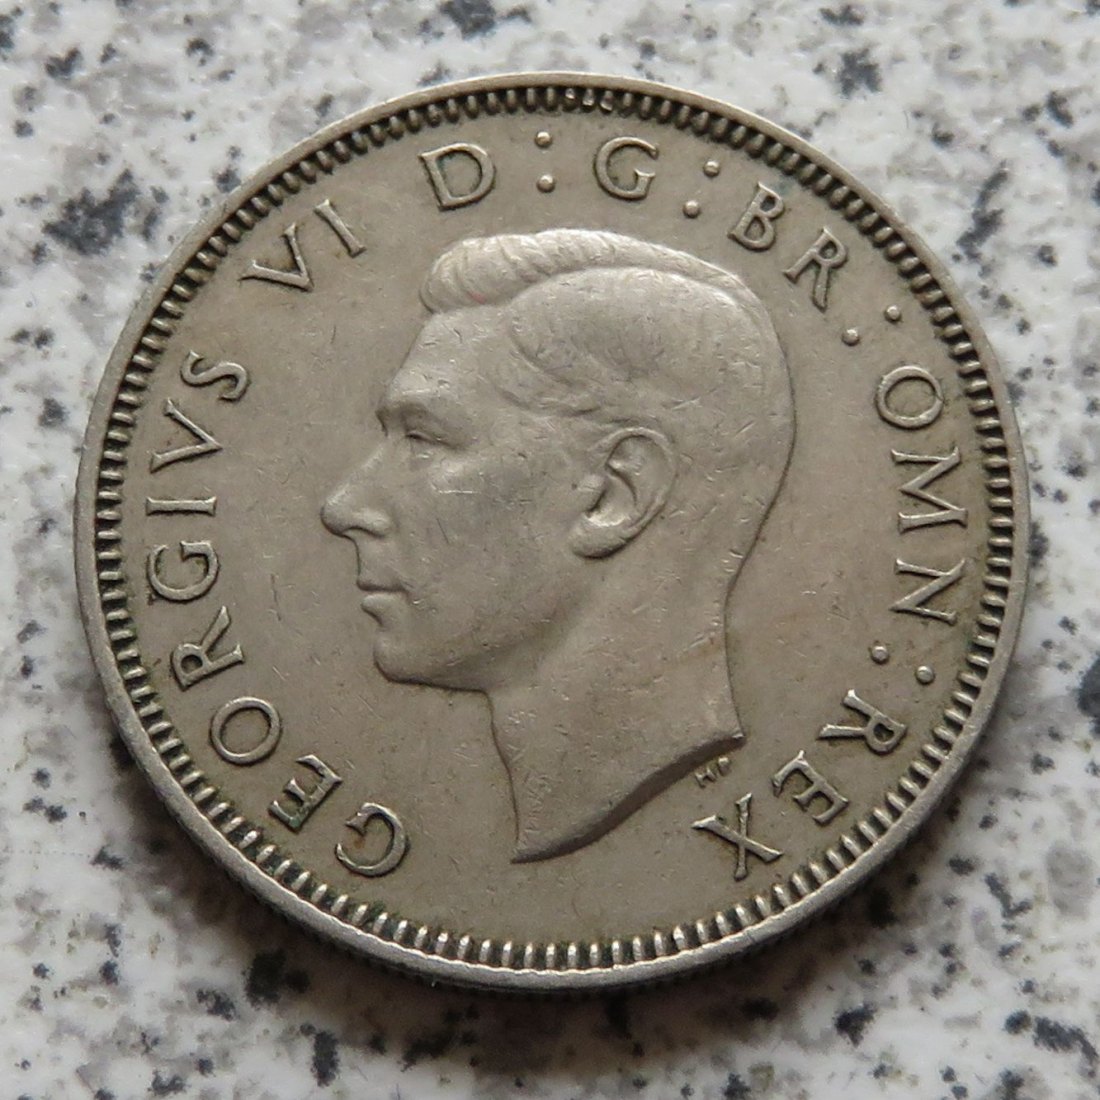  Großbritannien 1 Shilling 1947, Schottisch   